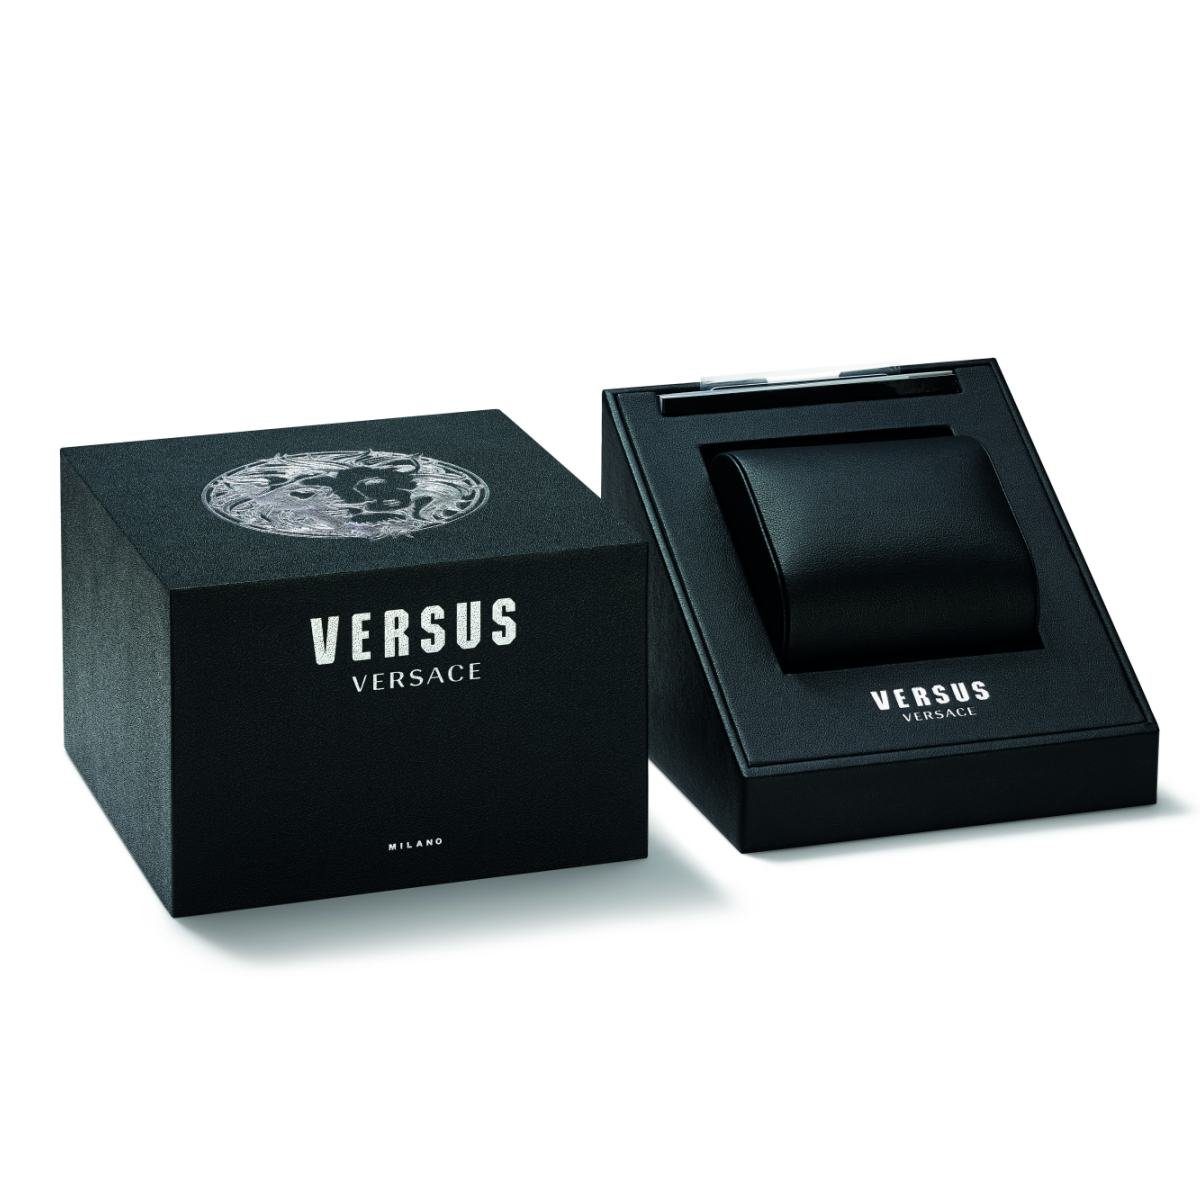 Quarzuhr Versus Versace VSPHI5921